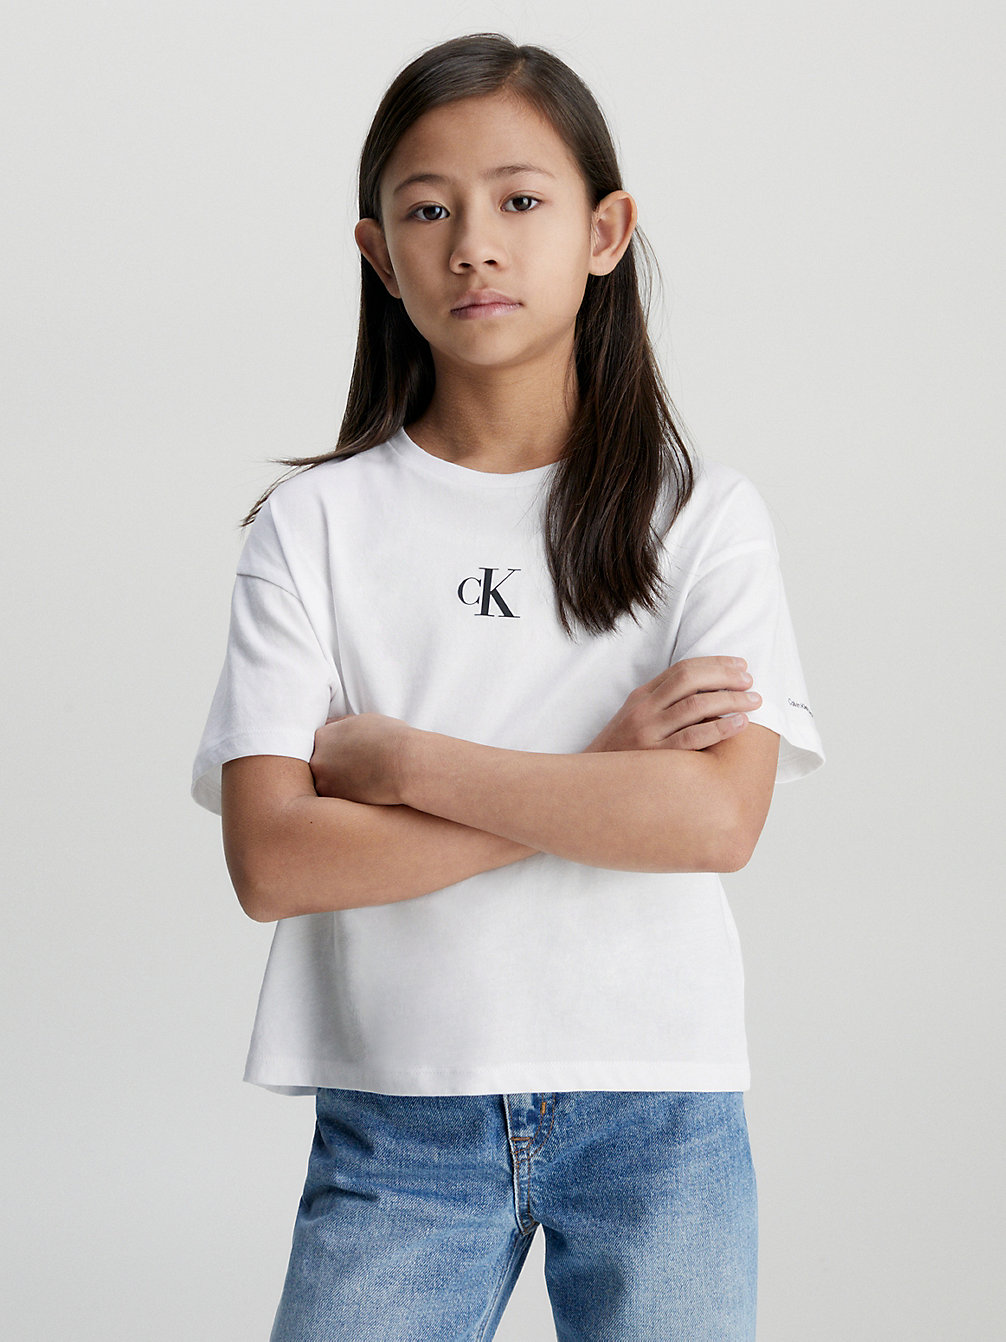 BRIGHT WHITE Boxy T-Shirt undefined girls Calvin Klein